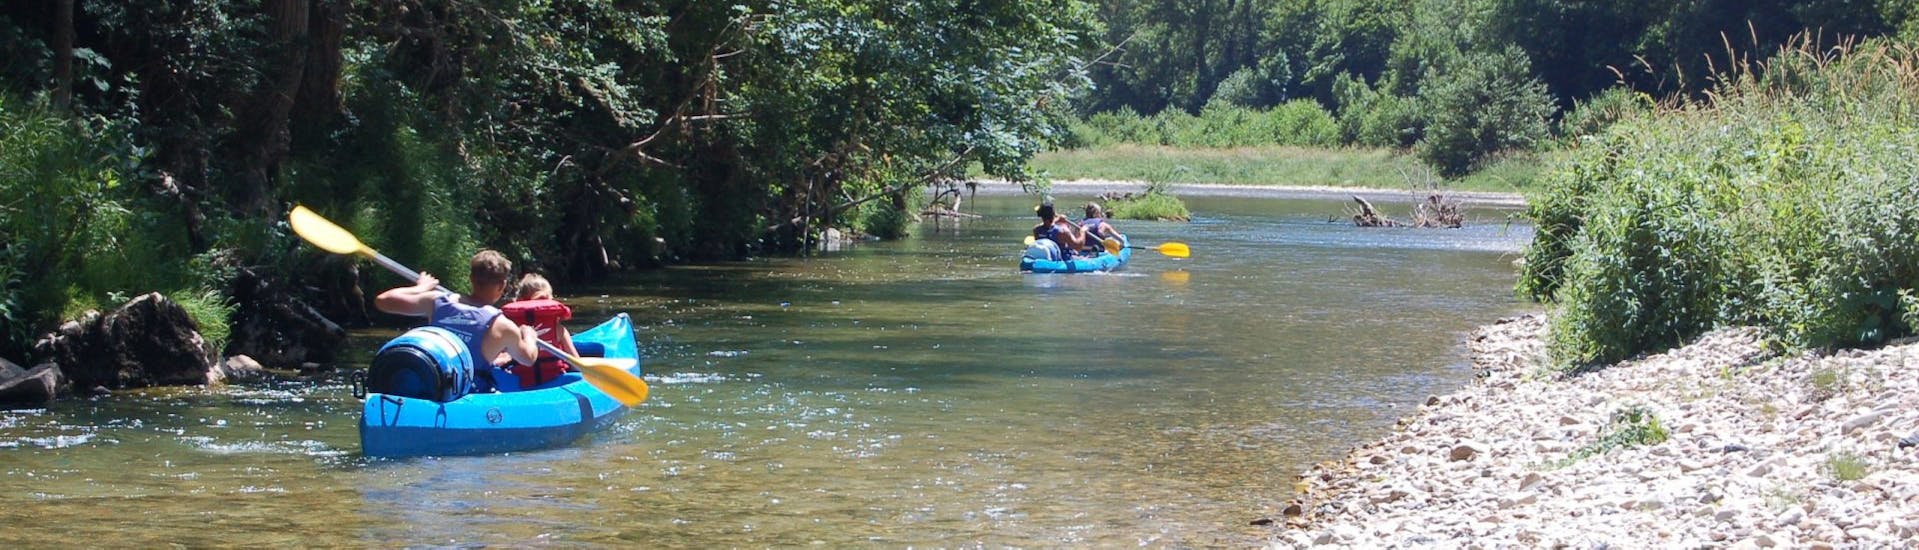 Canoë sur la rivière du Tarn pendant la balade en Canoë-kayak sur le Tarn de Castelbouc - 19km avec Lo Canoë.